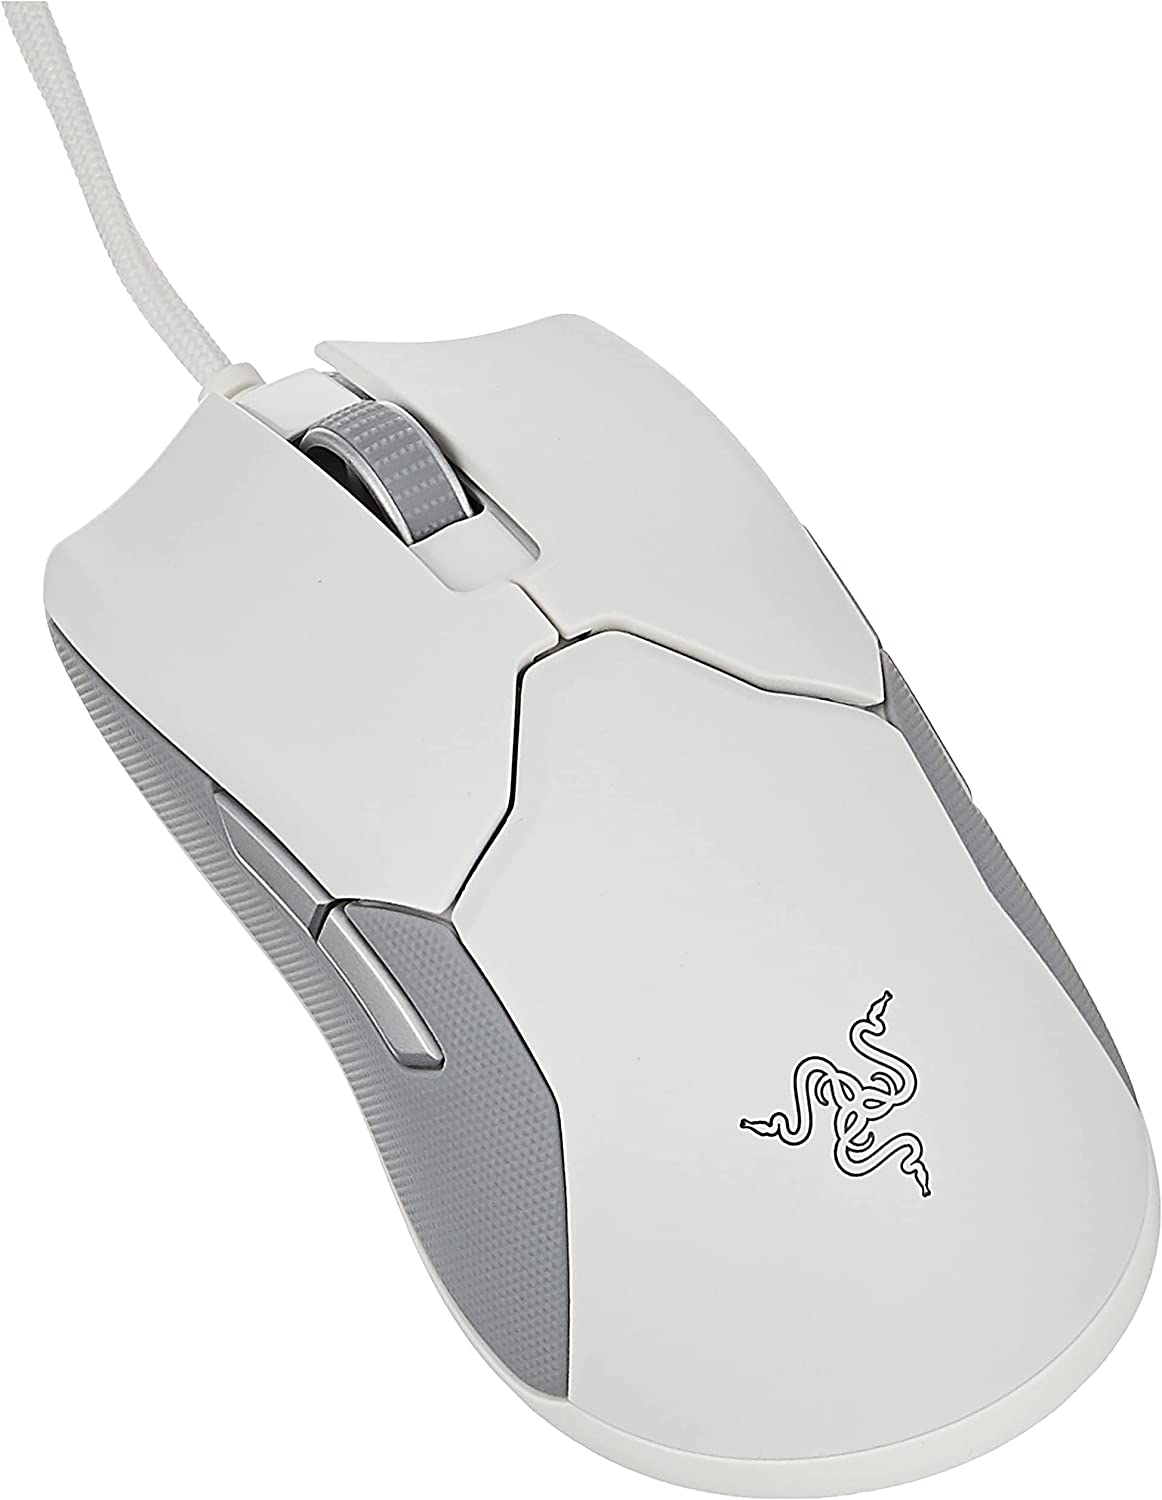 موس Razer Viper Ultralight Ambidextrous Wired Gaming Mouse white